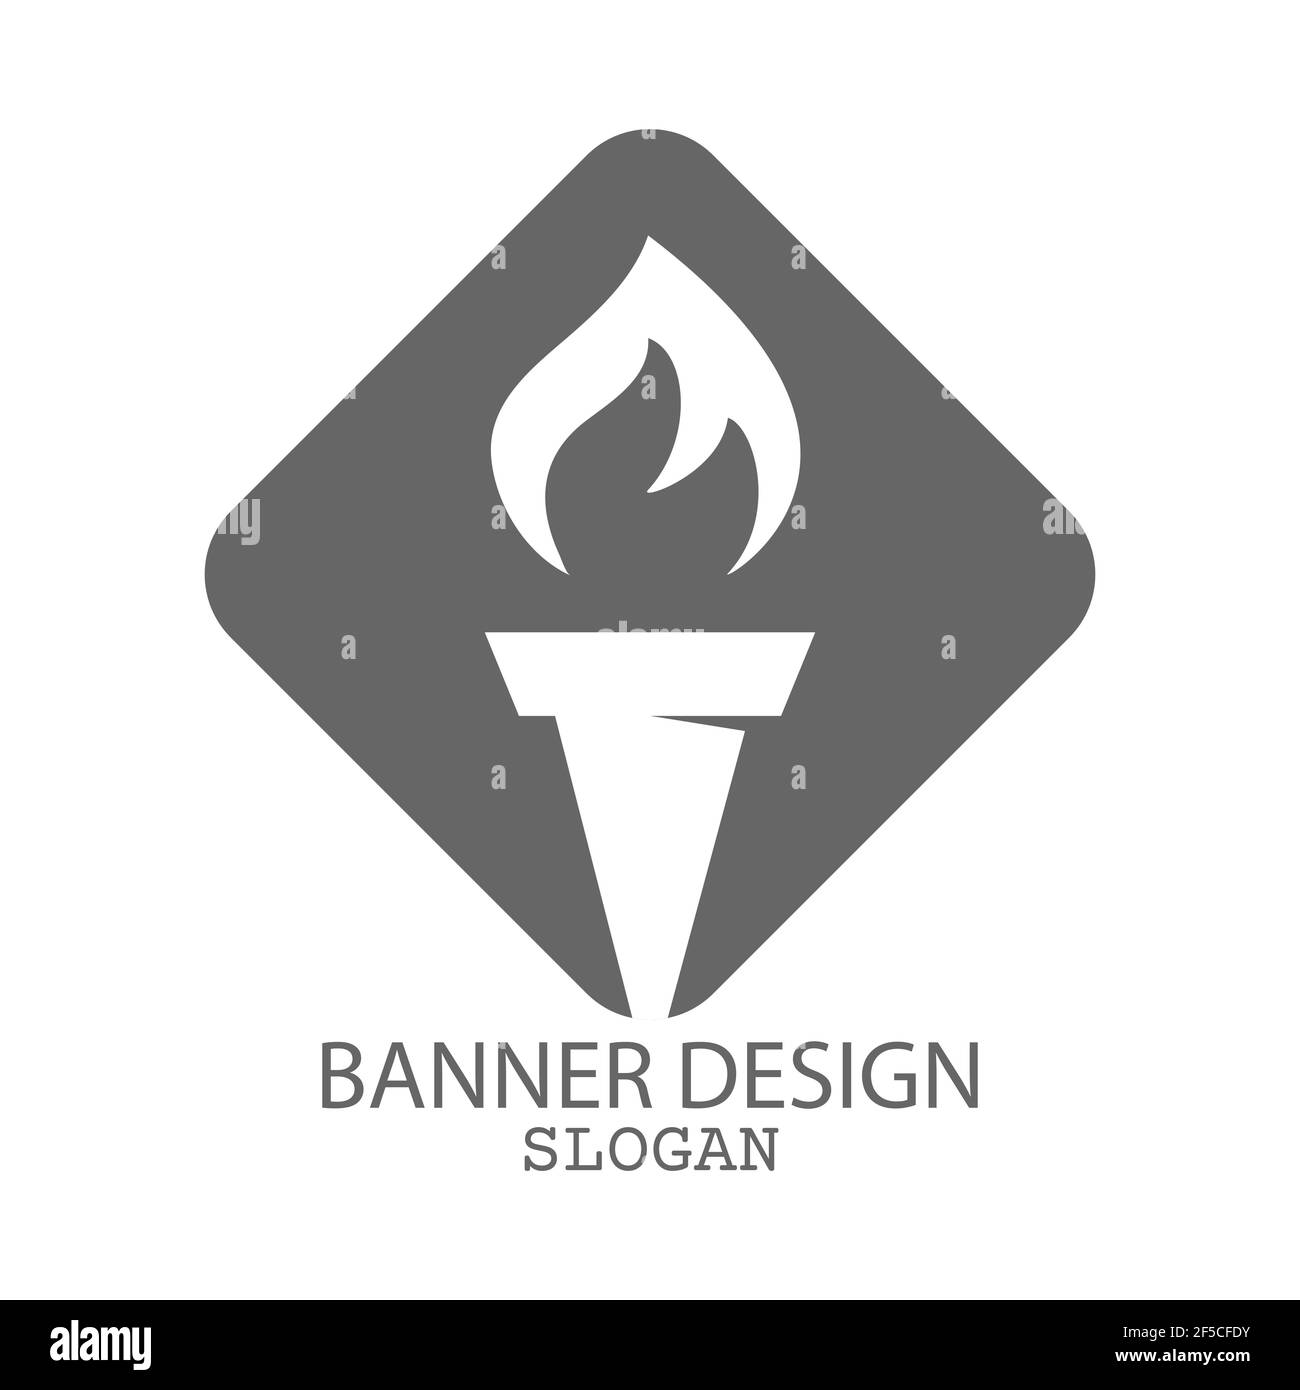 Taschenlampe. Vektor-Vorlage für ein Logo, Emblem oder Aufkleber, isoliert auf weißem Hintergrund. Flacher Style. Stock Vektor